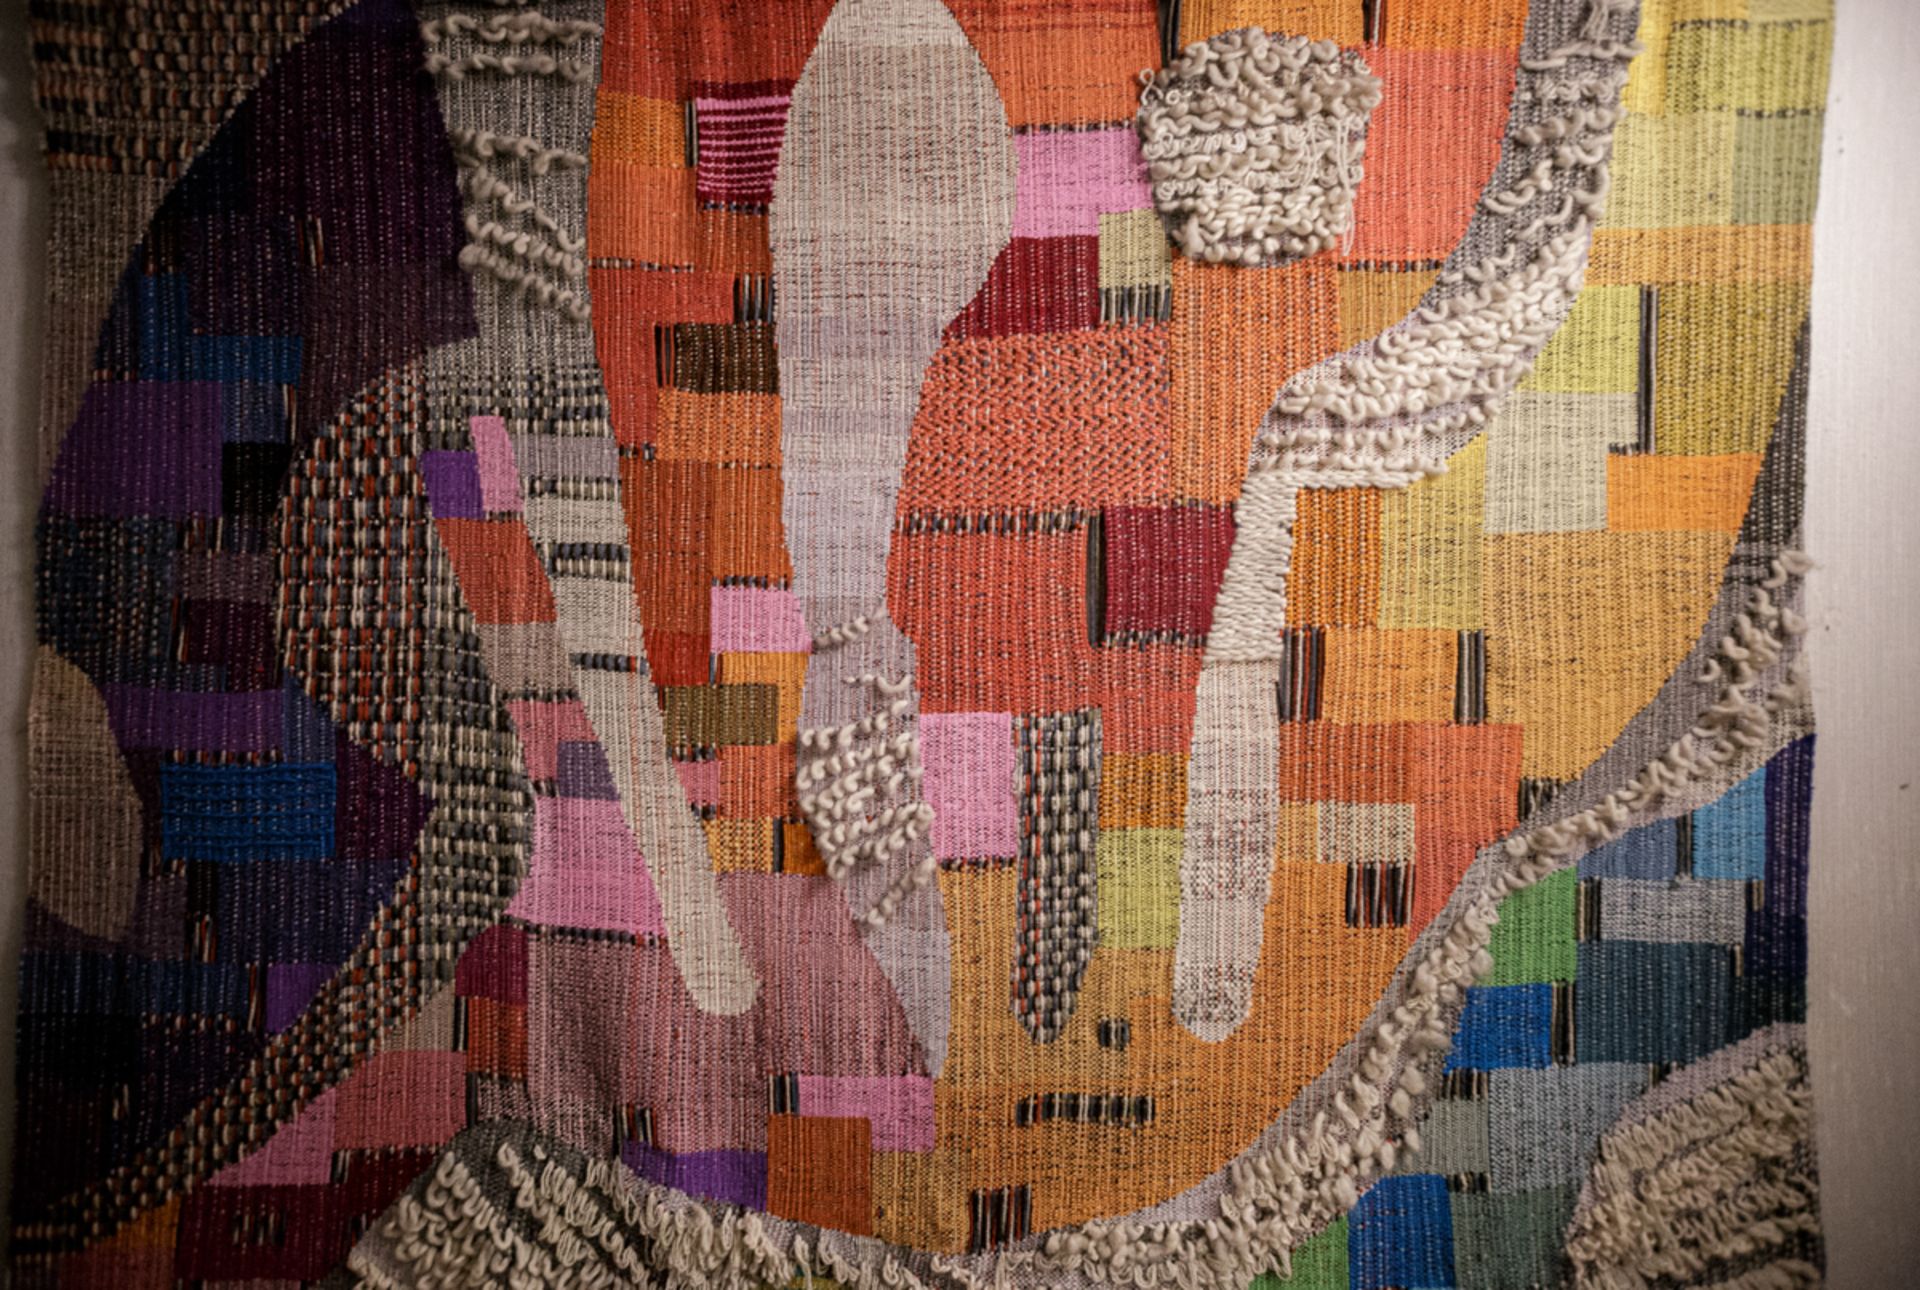 Hilla Selig (Berliner Textilkünstlerin) - Image 2 of 2